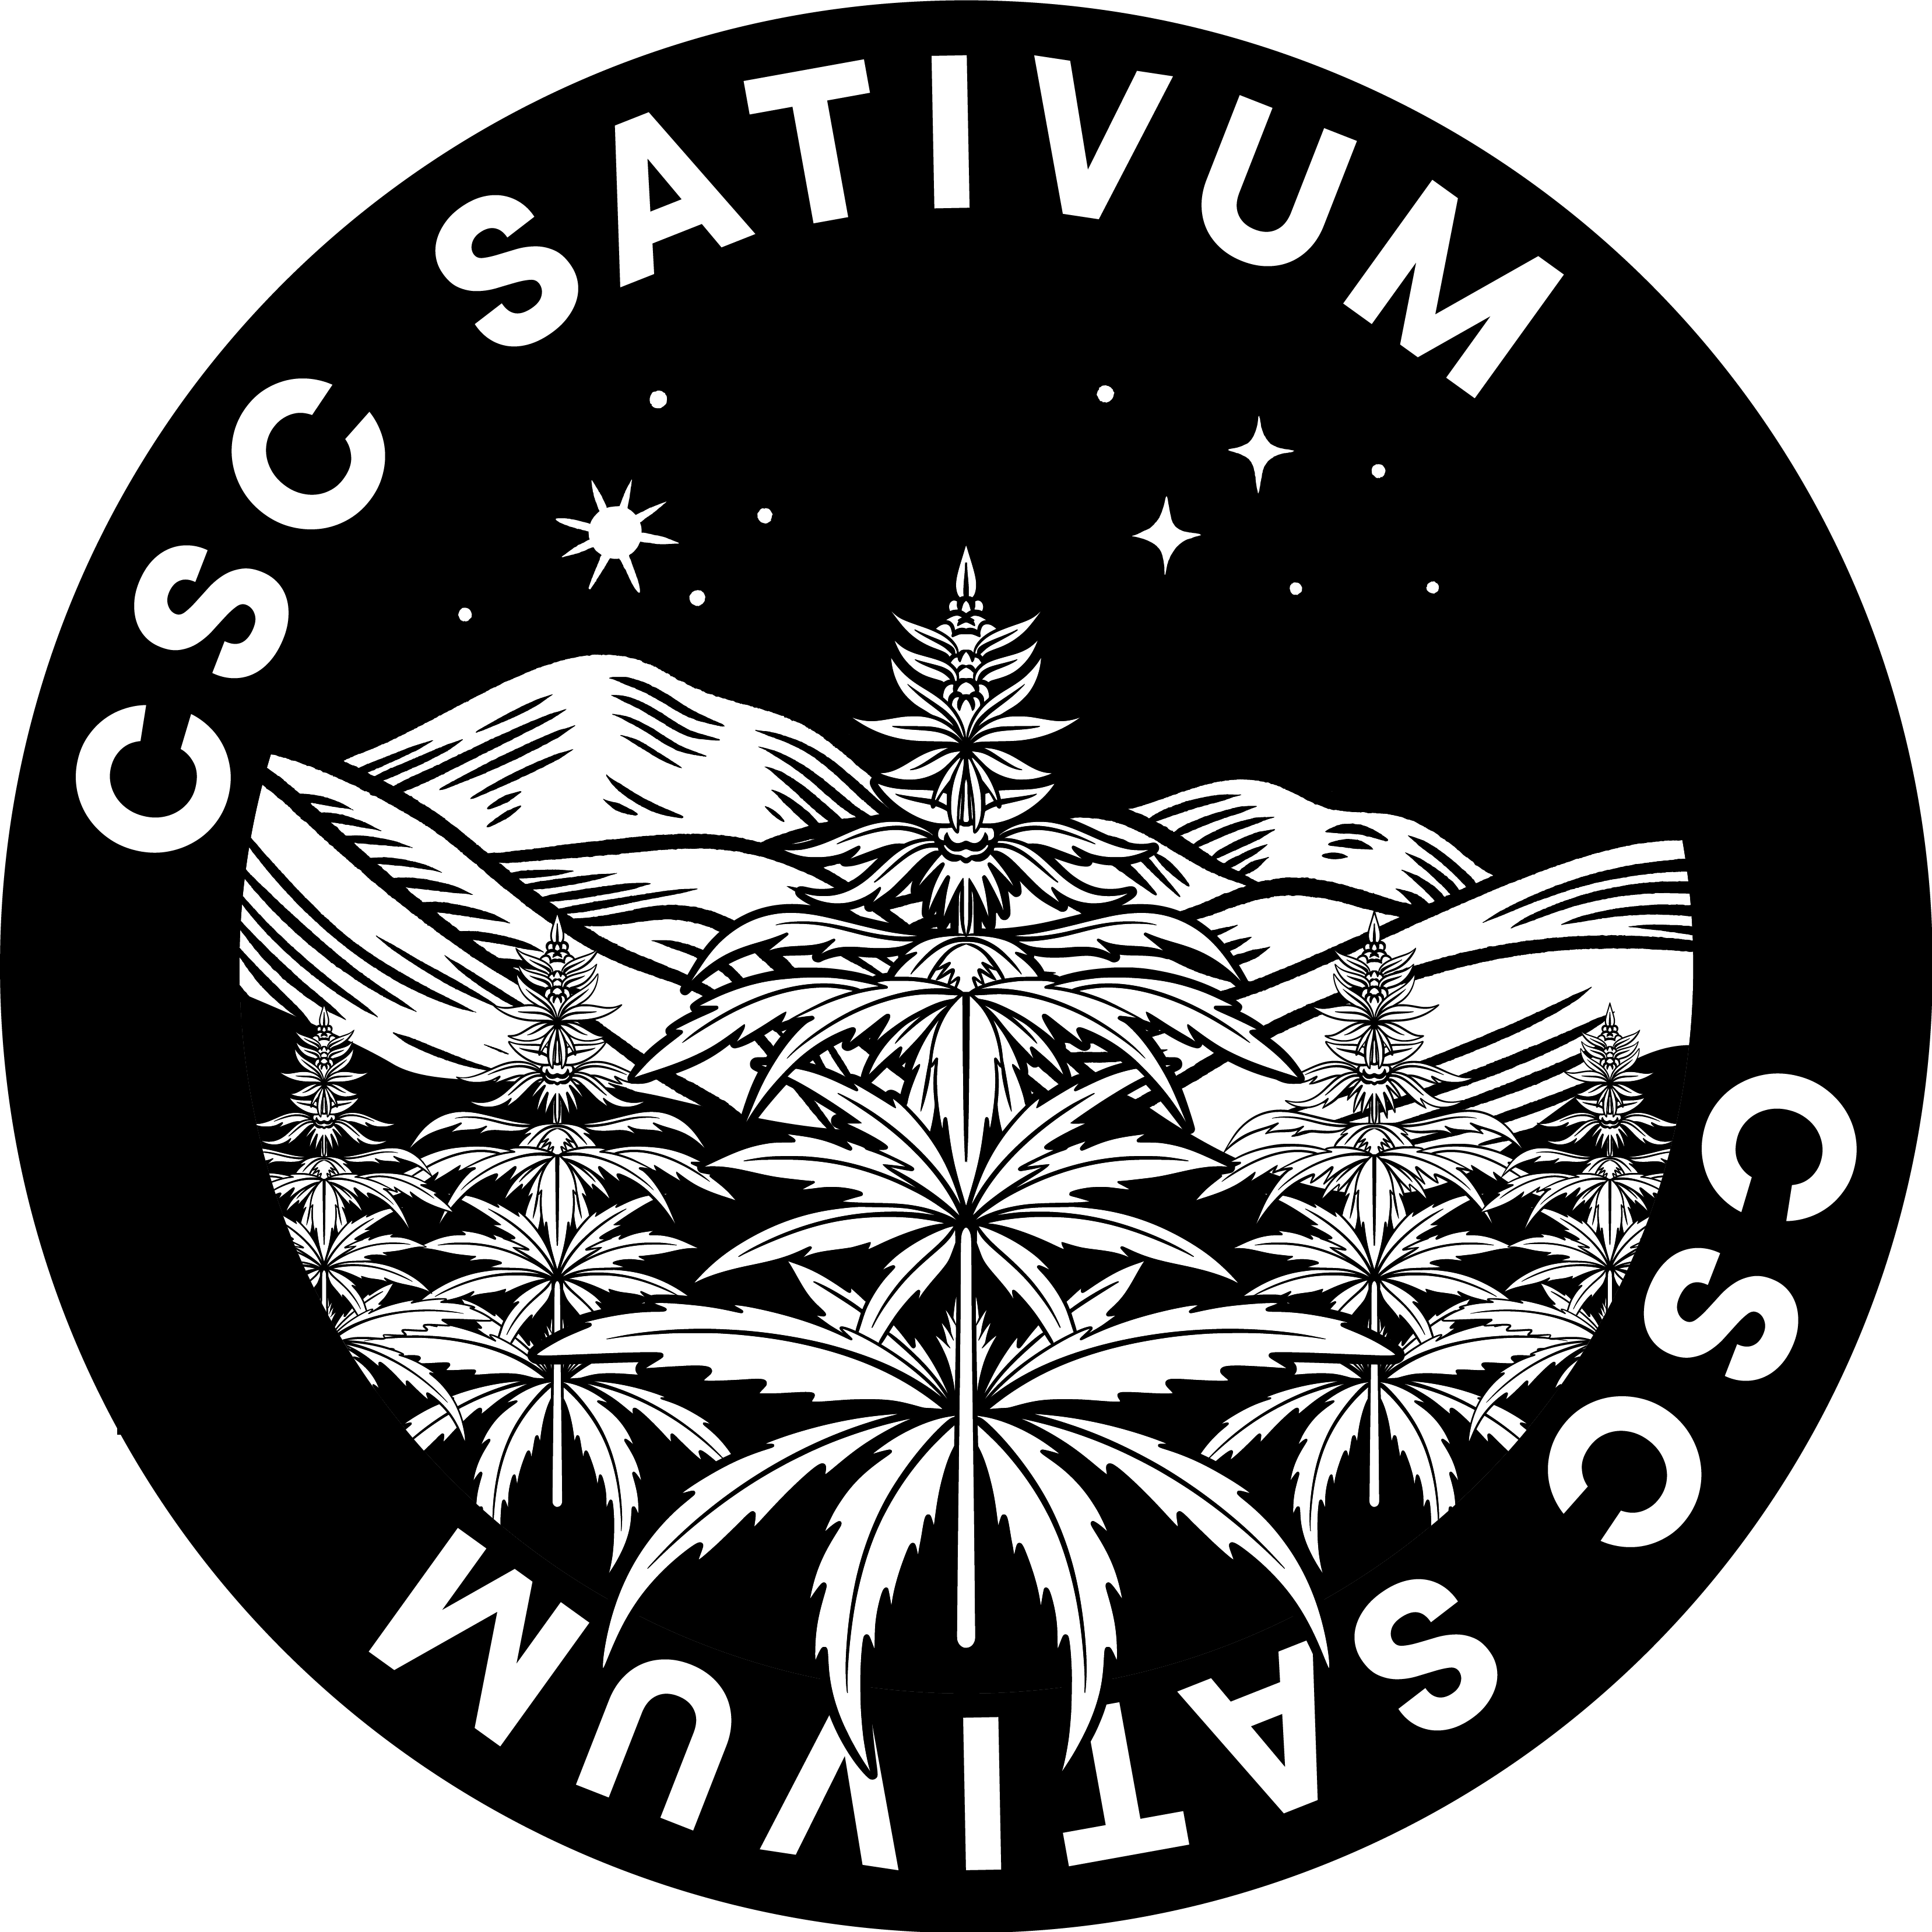 CSC Sativum e. V. in Oldenburg